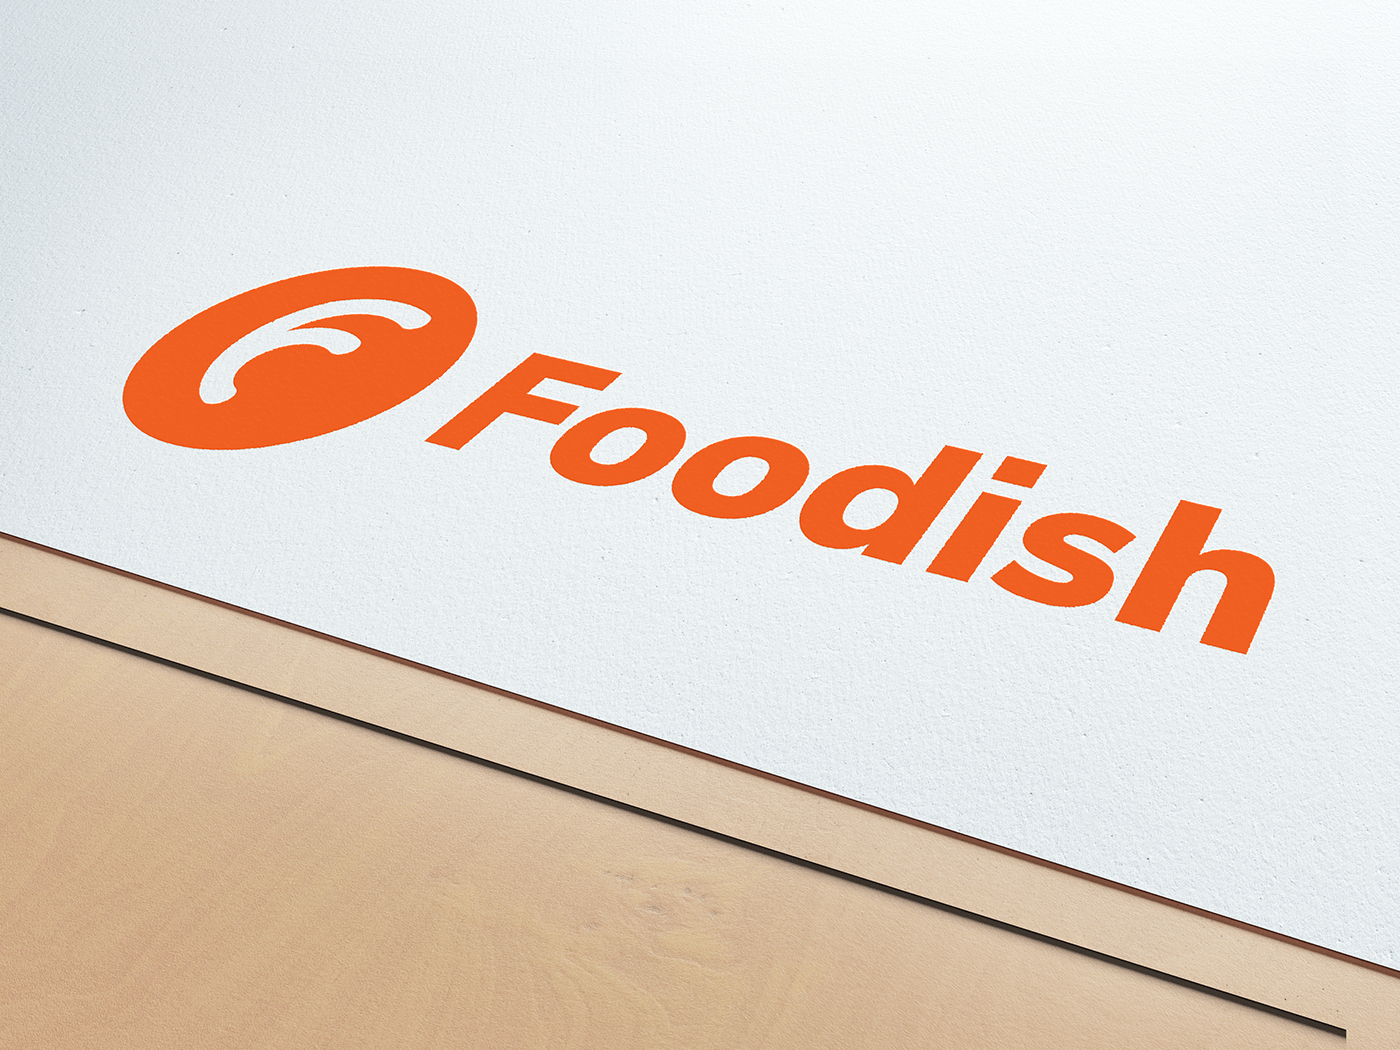 food branding branding for food branding social media social media logo food logo logo social media Logo for Food recommendation app recommendation app logo